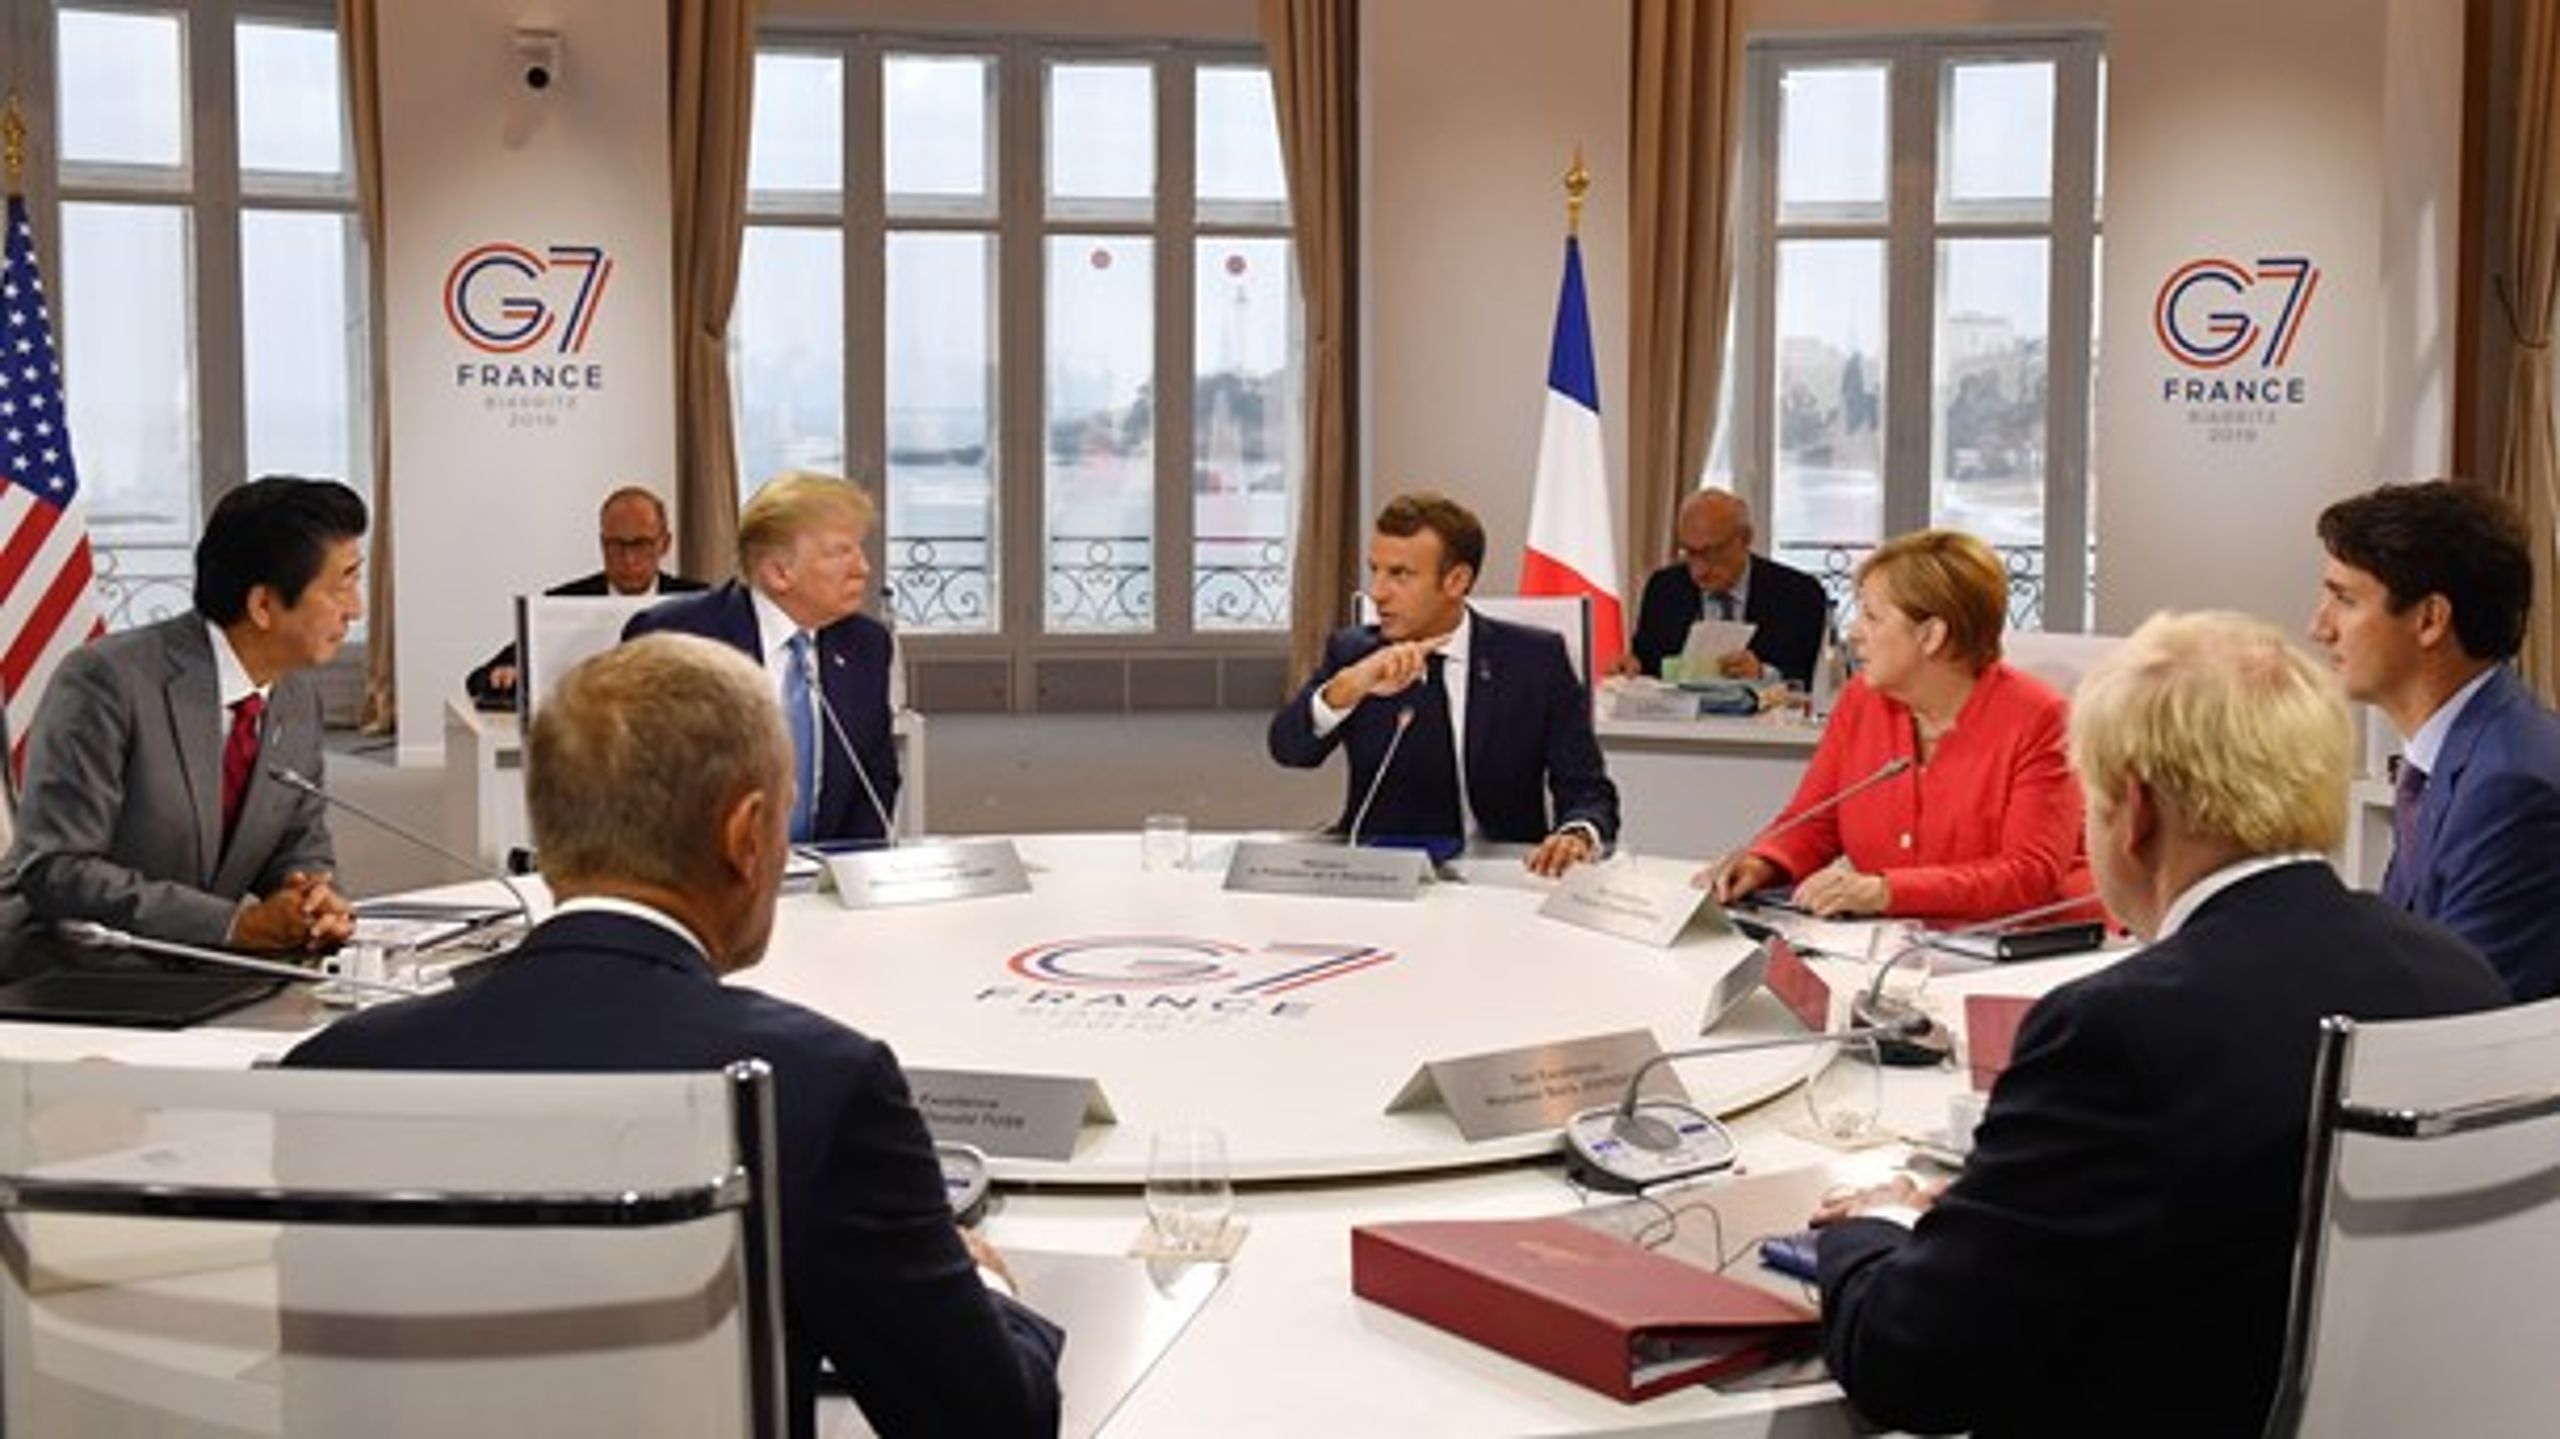 Det internationale samarbejde er under massivt pres overalt.&nbsp;Senest har&nbsp;selv G7 opgivet at lave en fælles udtalelse fra mødet i Frankrig, skriver Christian Friis Bach.